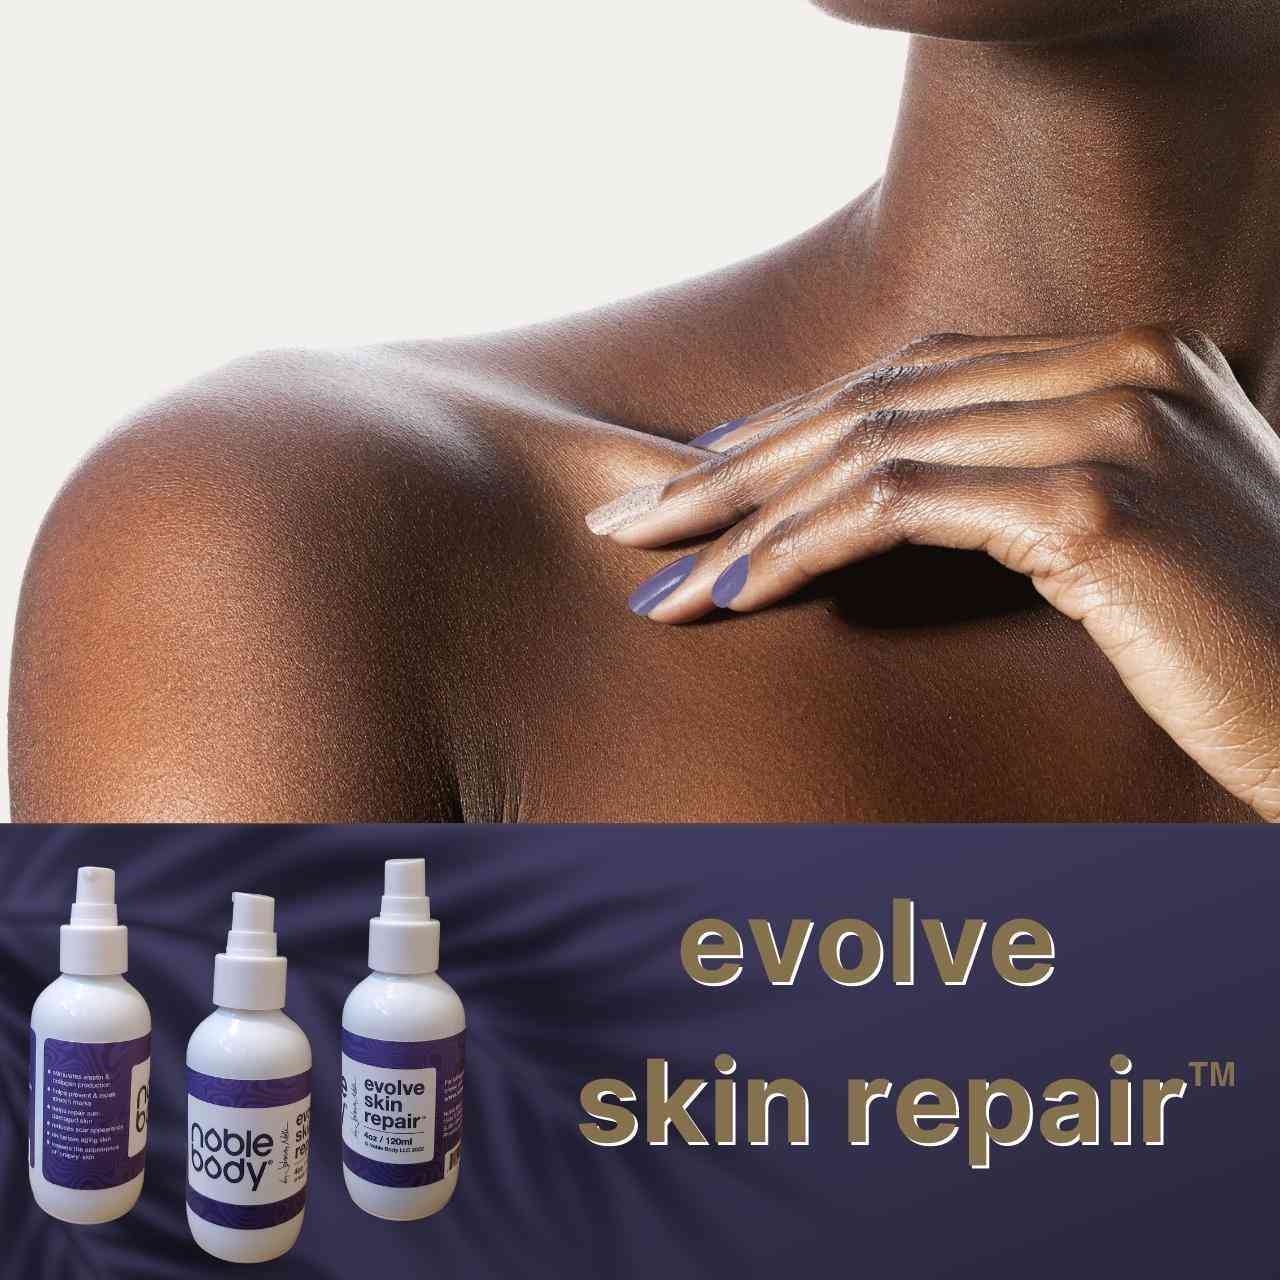 Evolve Skin Repair